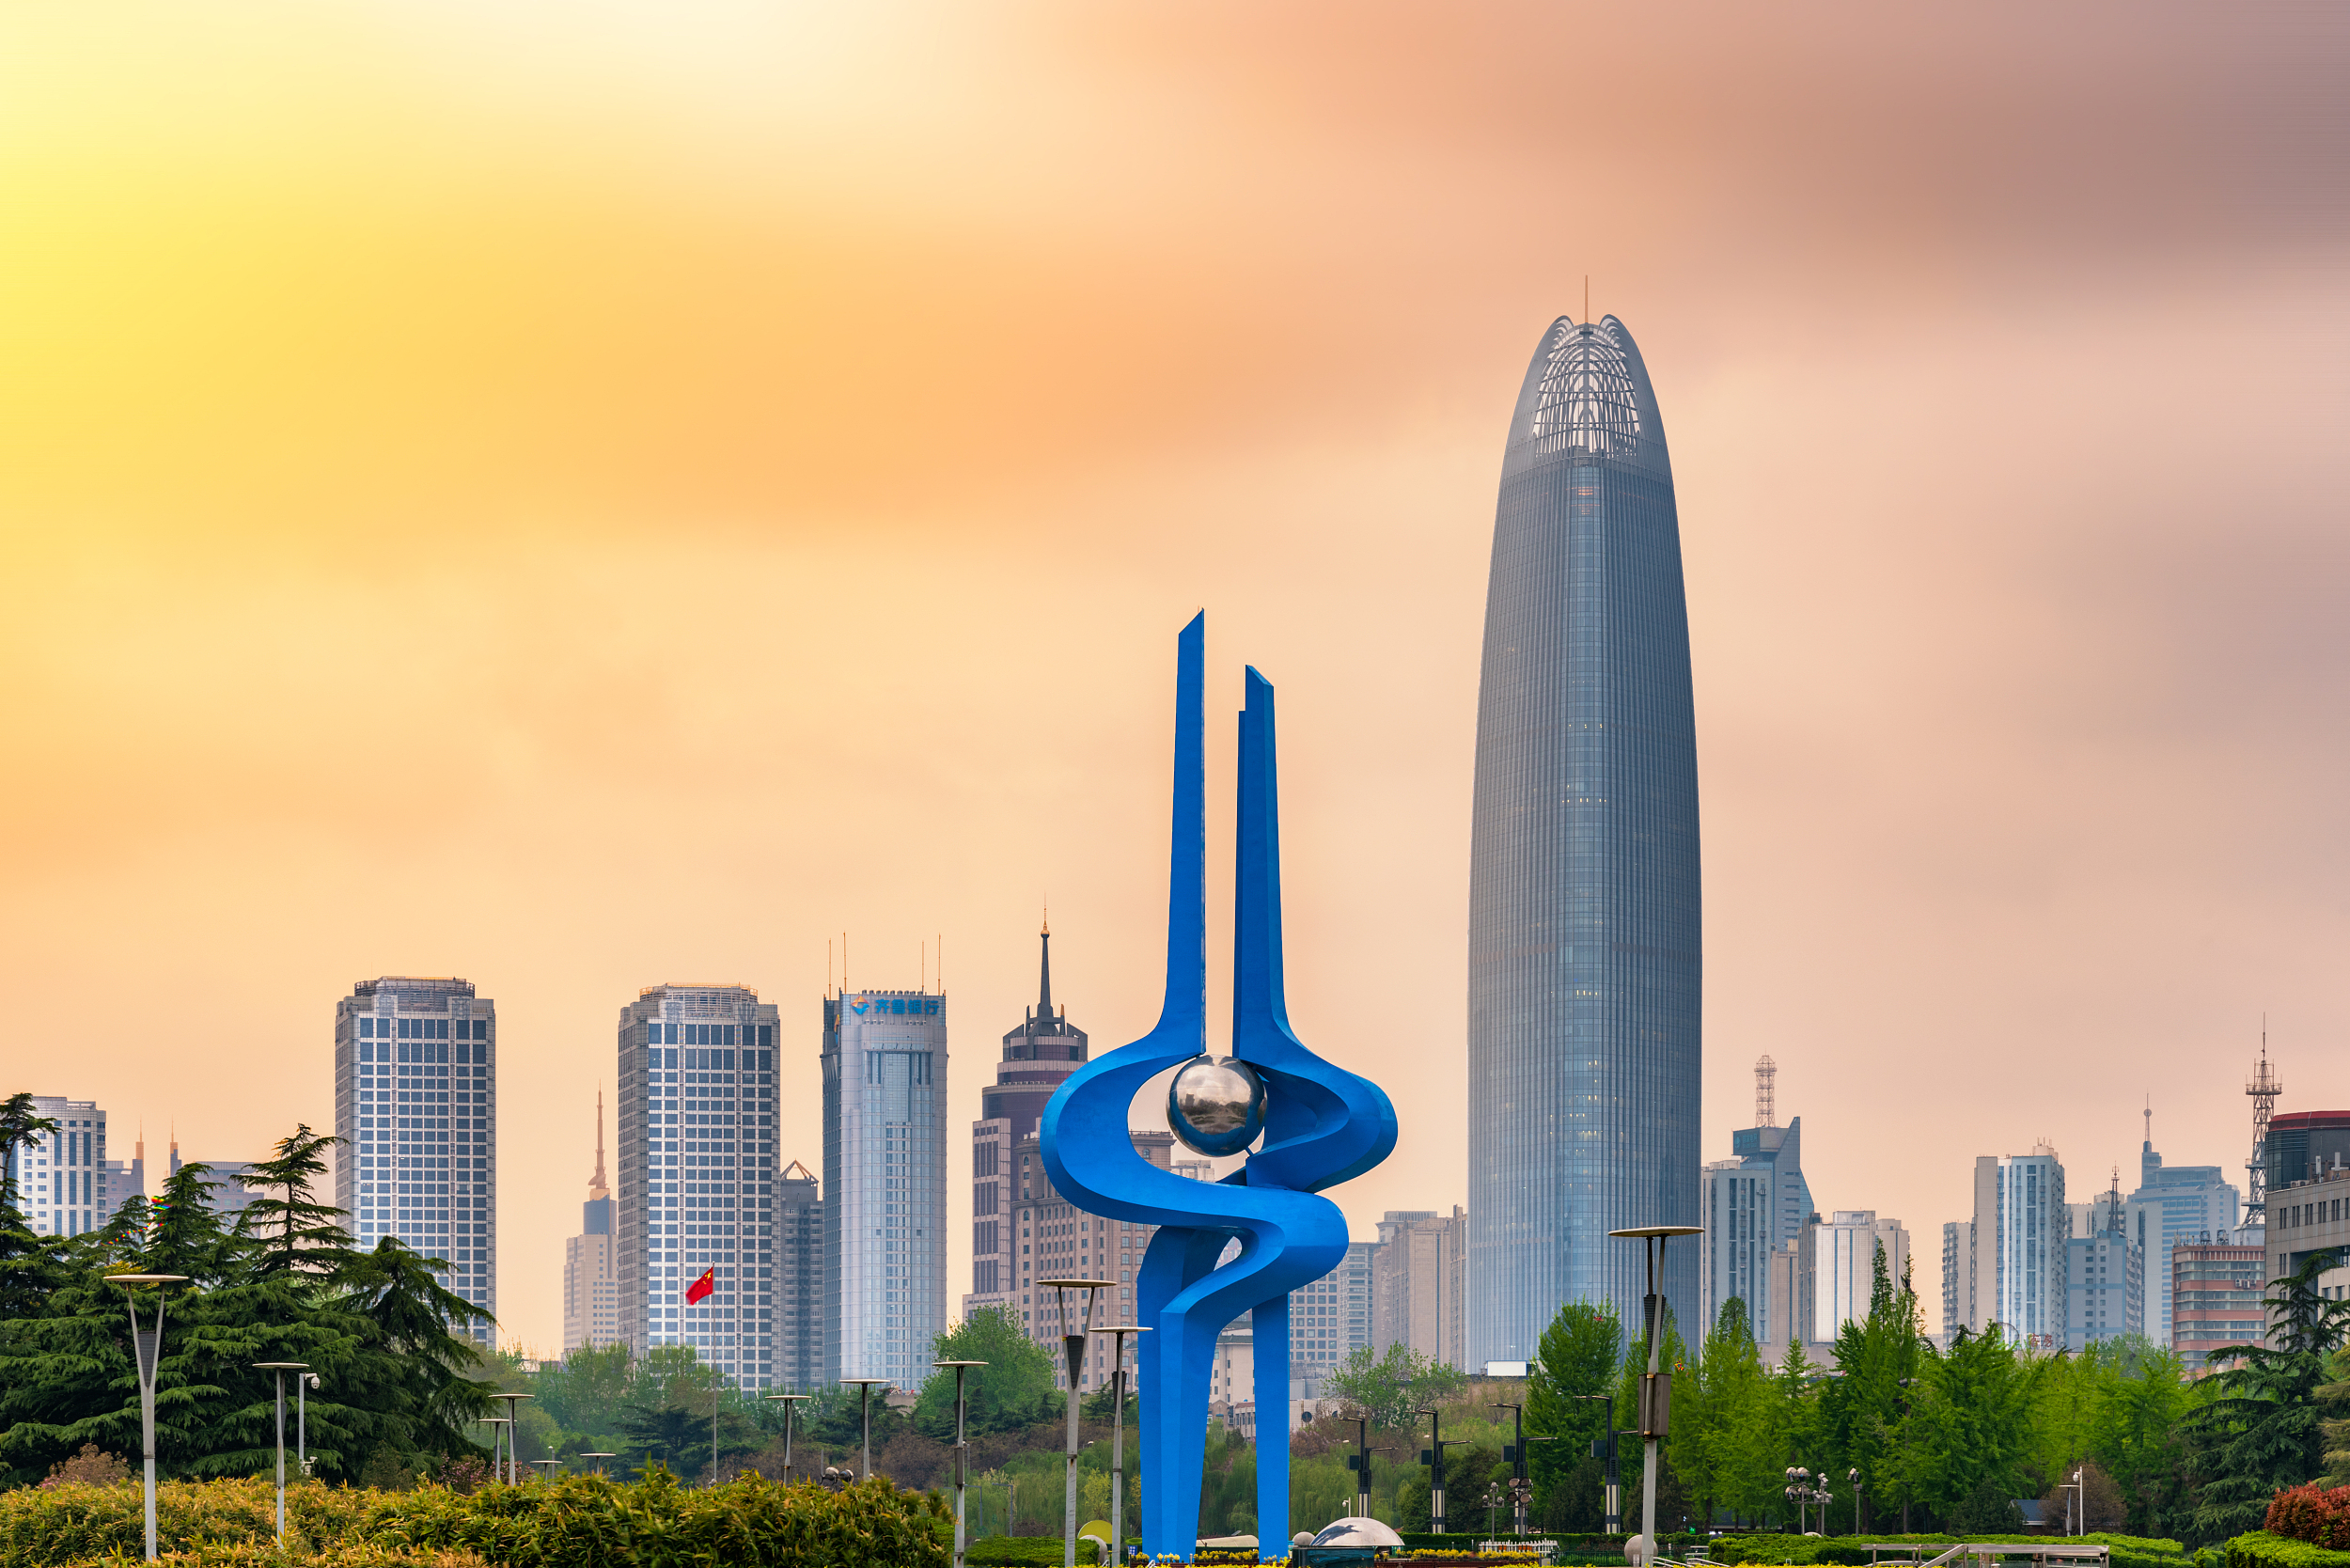 原创超特大城市名单排行扩充至16个杭州超南京济南晋级